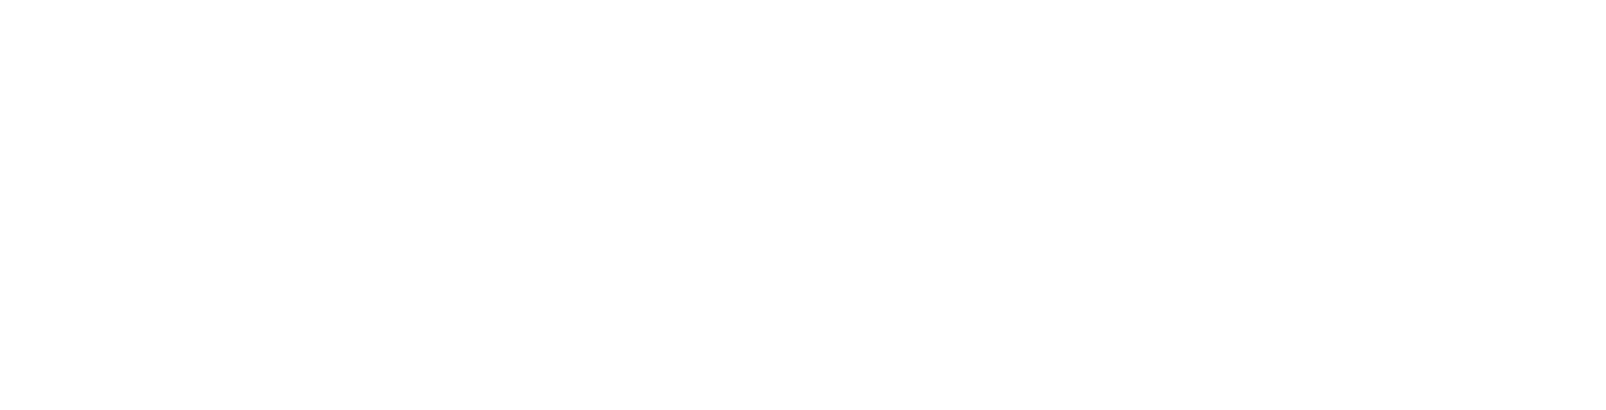 Keywords Studios logo grand pour les fonds sombres (PNG transparent)